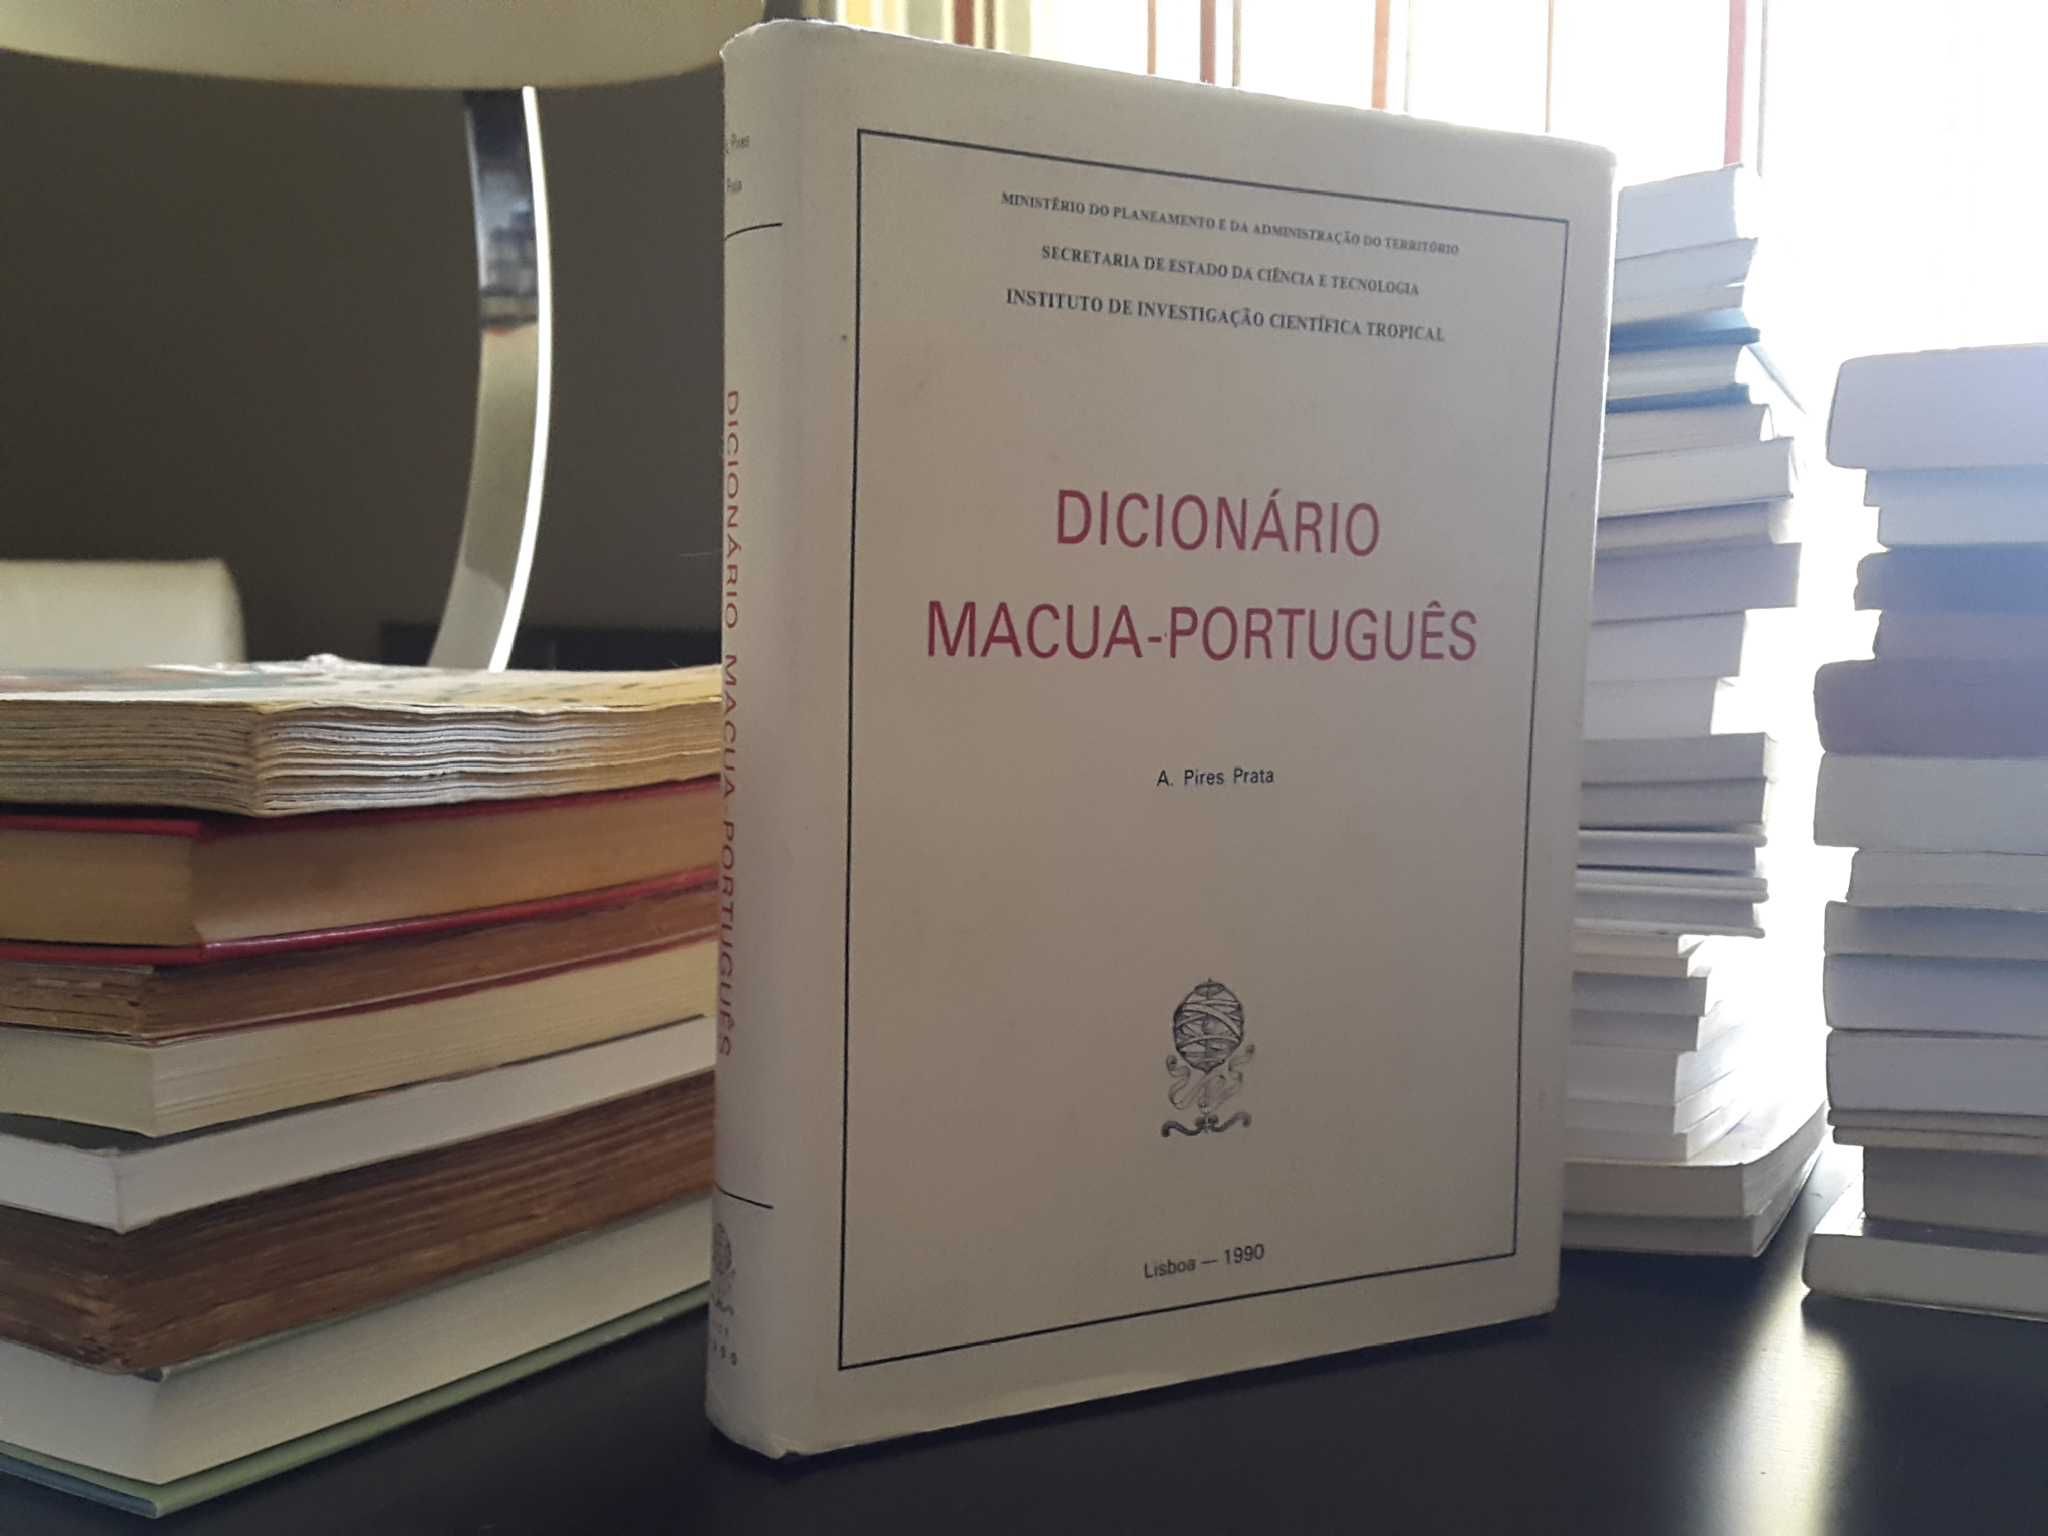 A. Pires Prata - Dicionário Macua-Português